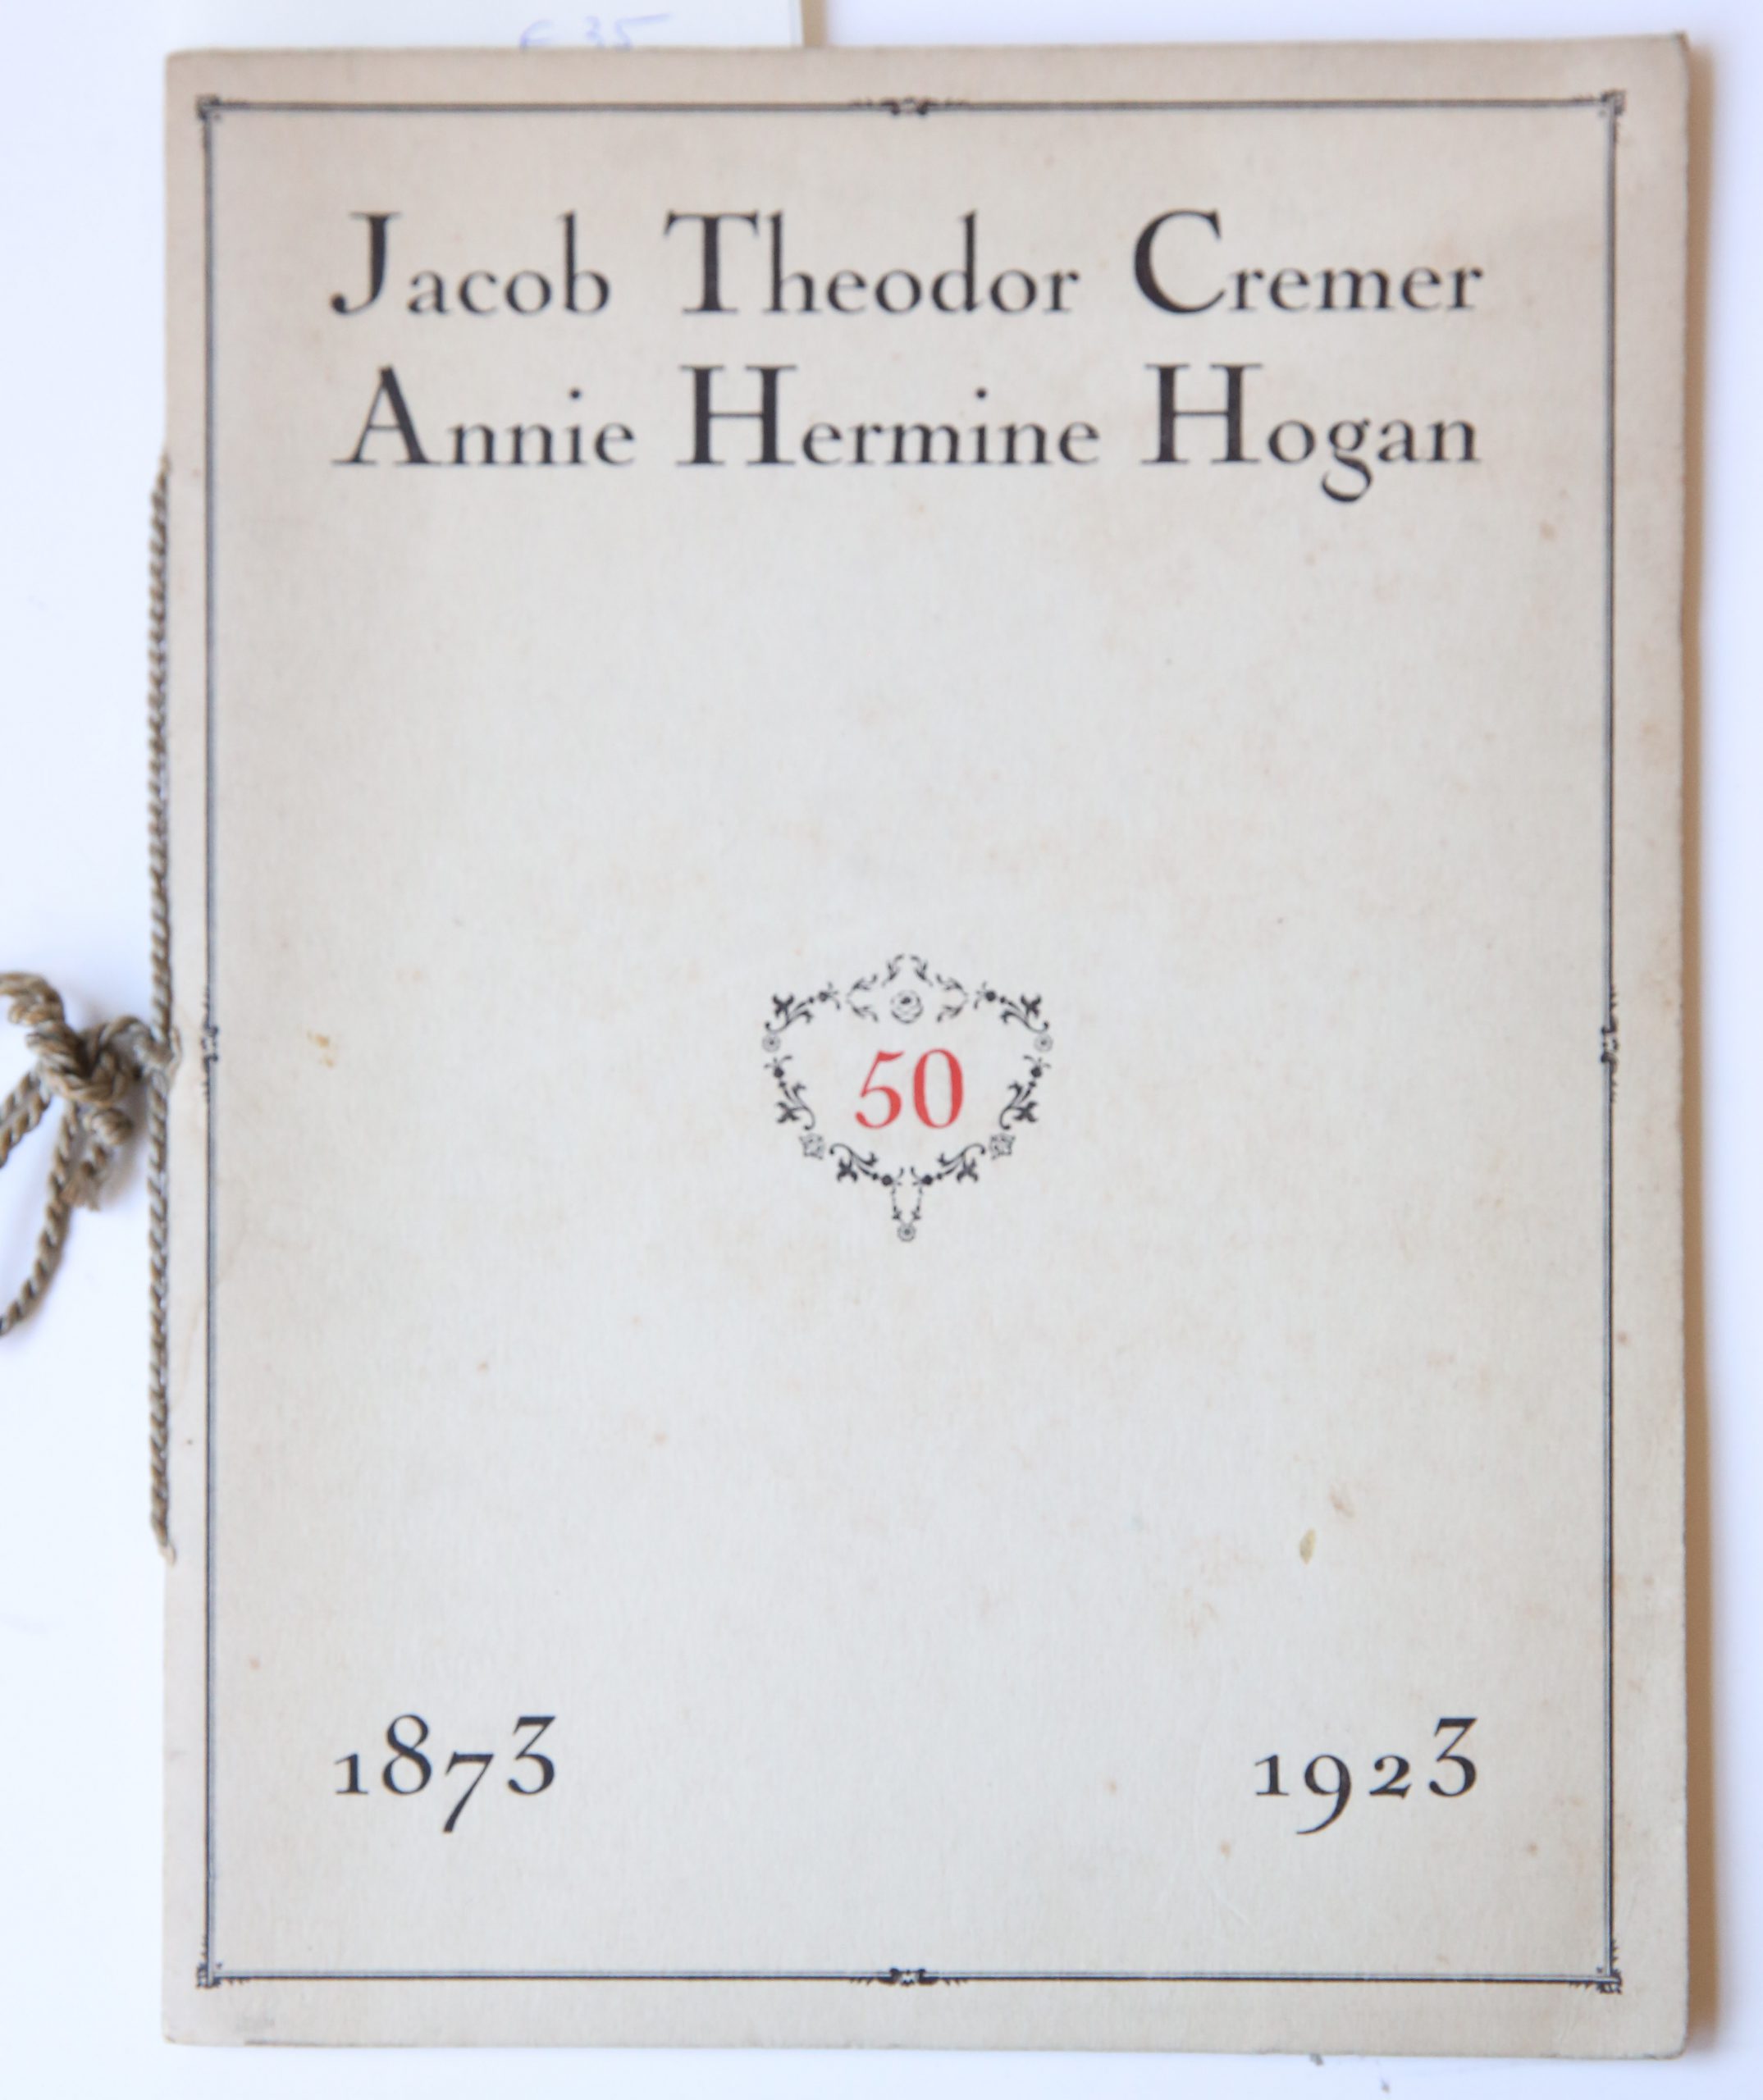 1873-1923, Programma der feestelijkheden ter eere van Jacob Theodor Cremer en Annie Hermine Hogan op hun Gouden Huwelijksfeest gevierd op Duin- en Kruidberg den 16den Januari van het jaar 1923, 20 pp, geillustreerd.